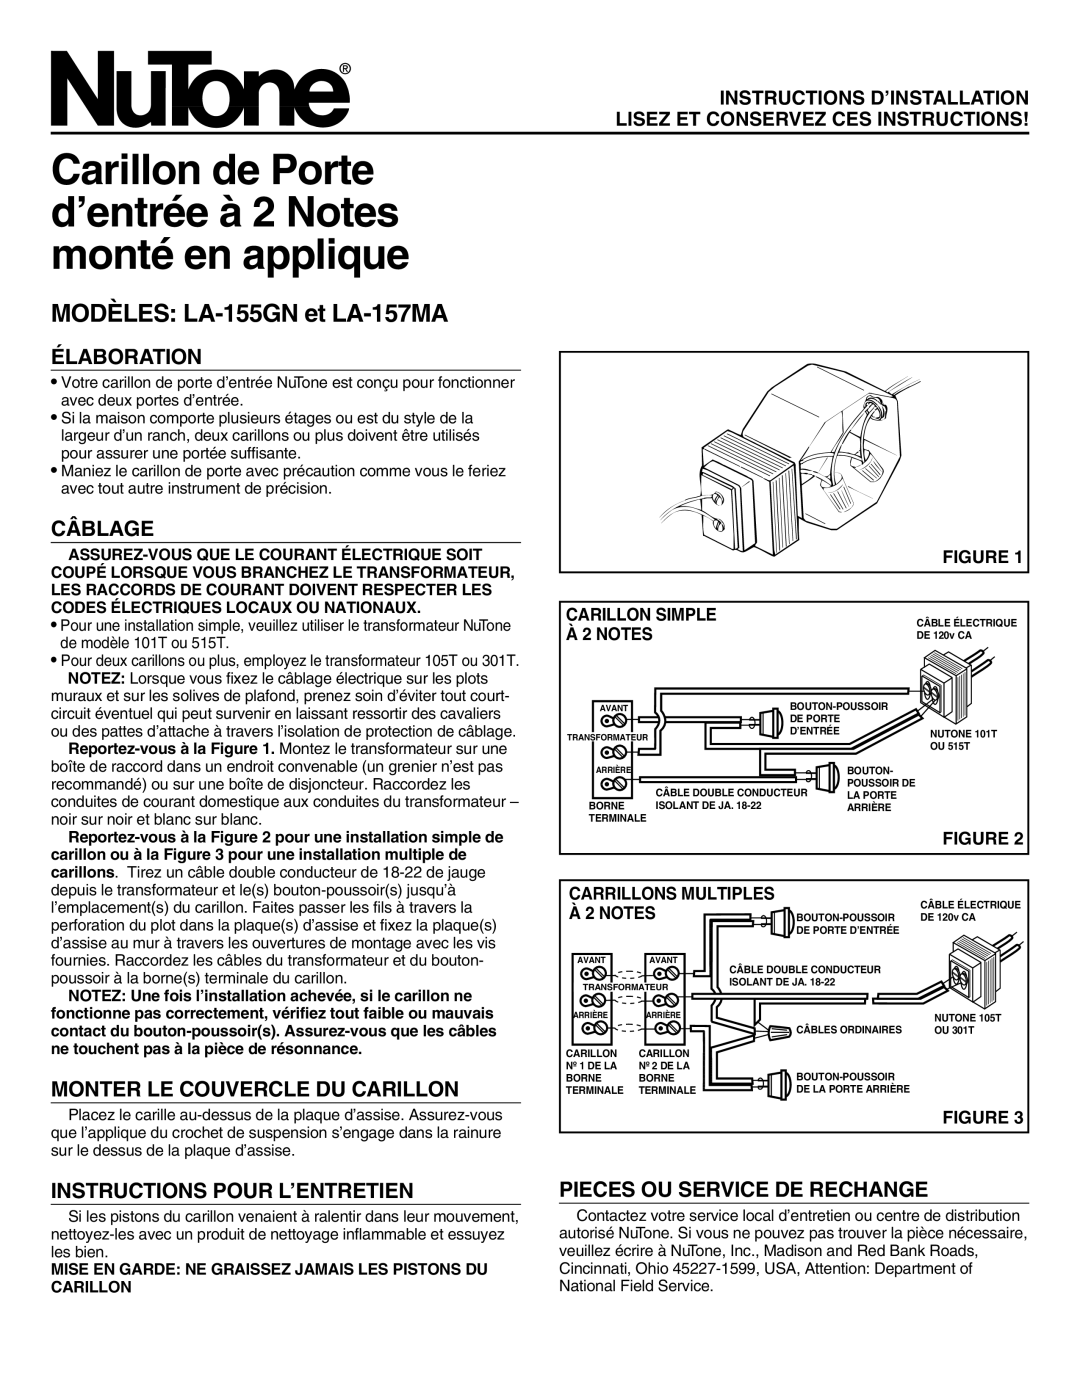 NuTone MODÈLES LA-155GNet LA-157MA, Élaboration, Câblage, Monter Le Couvercle Du Carillon, Carillon Simple, À 2 NOTES 